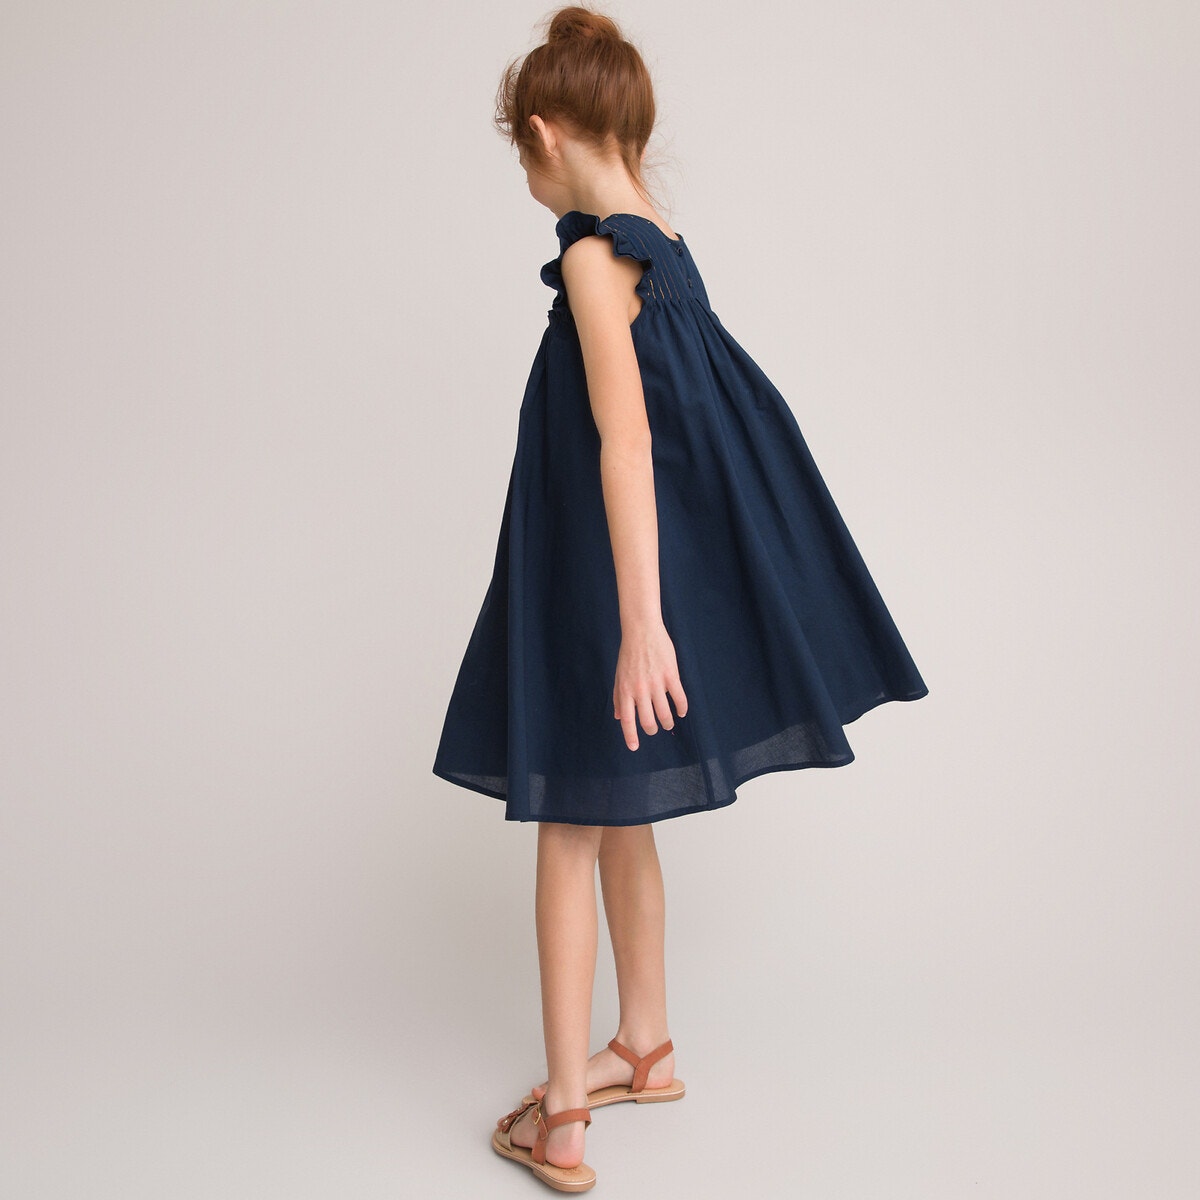 ΠΑΙΔΙ | Φορέματα | Αμάνικα Αμάνικο φόρεμα από οργανικό βαμβάκι, 3-12 ετών